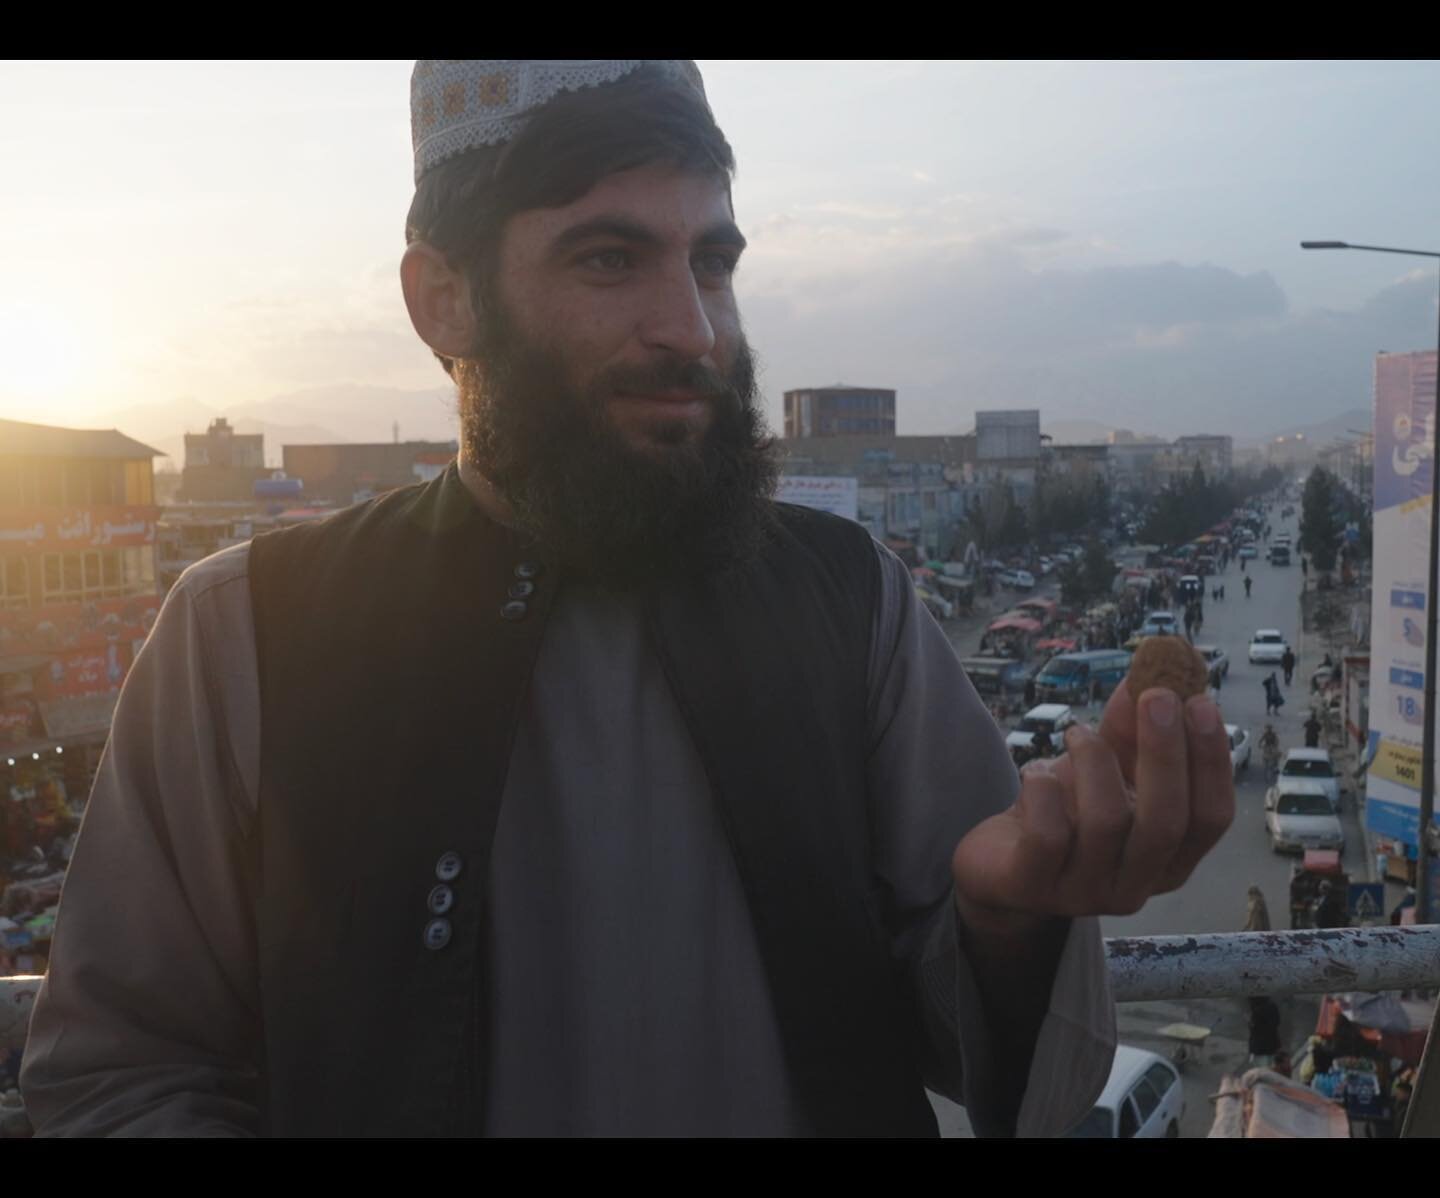 Die Story im Ersten: Afghanistan &ndash; ein Jahr sp&auml;ter (rbb)
Mission Kabul-Luftbr&uuml;cke (45 Min.), Ausstrahlung am 08.08.22 um 22.20 Uhr 

Heute Abend erz&auml;hlen wir in der ARD von einem Afghanistan unter den Taliban von November 2021 bi